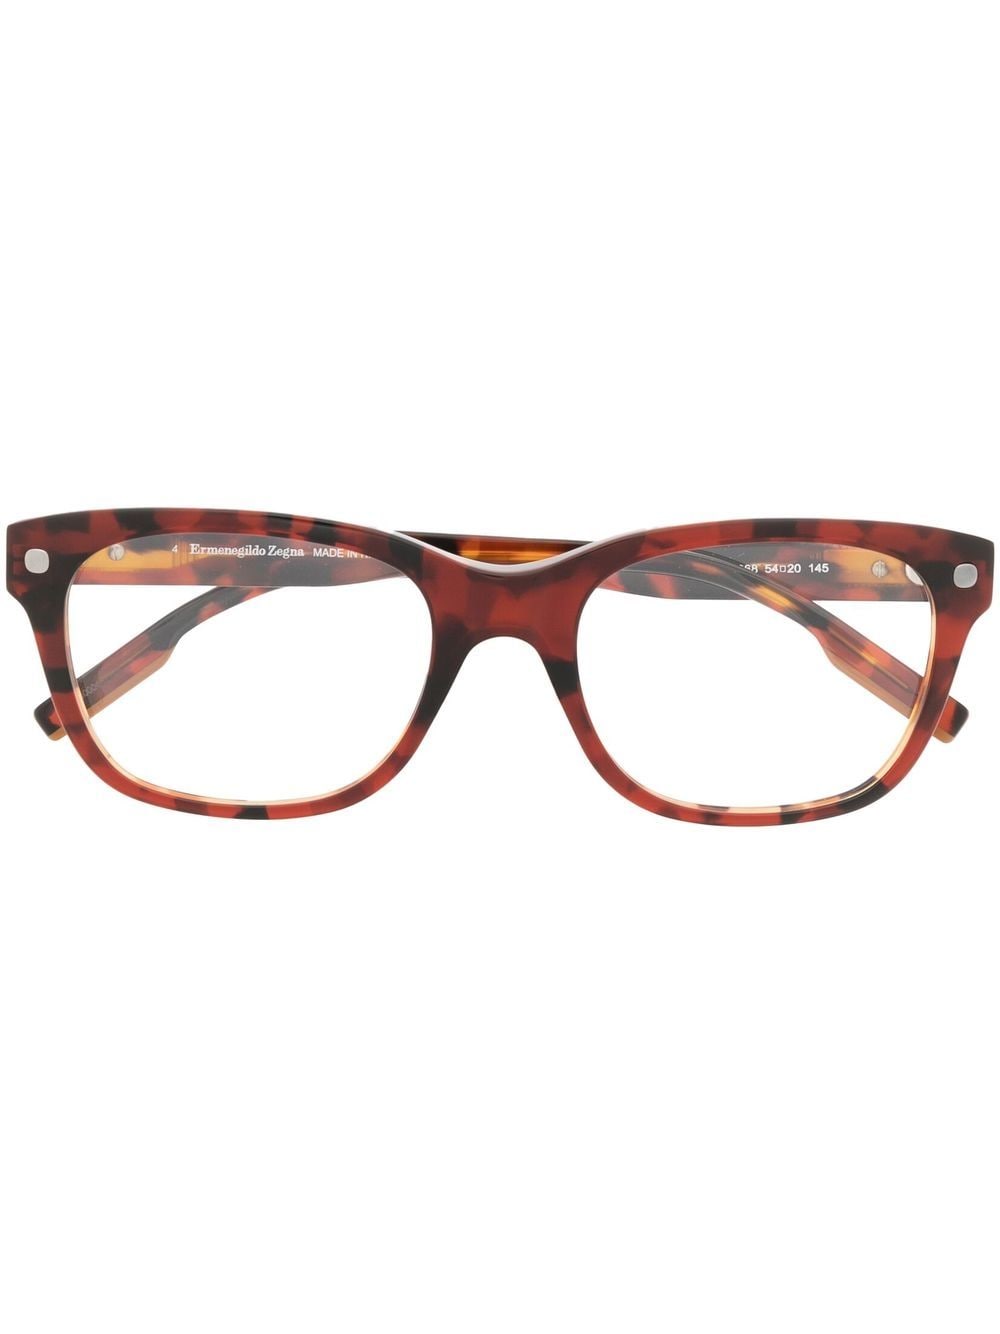 Zegna tortoiseshell square-frame glasses - Brown von Zegna